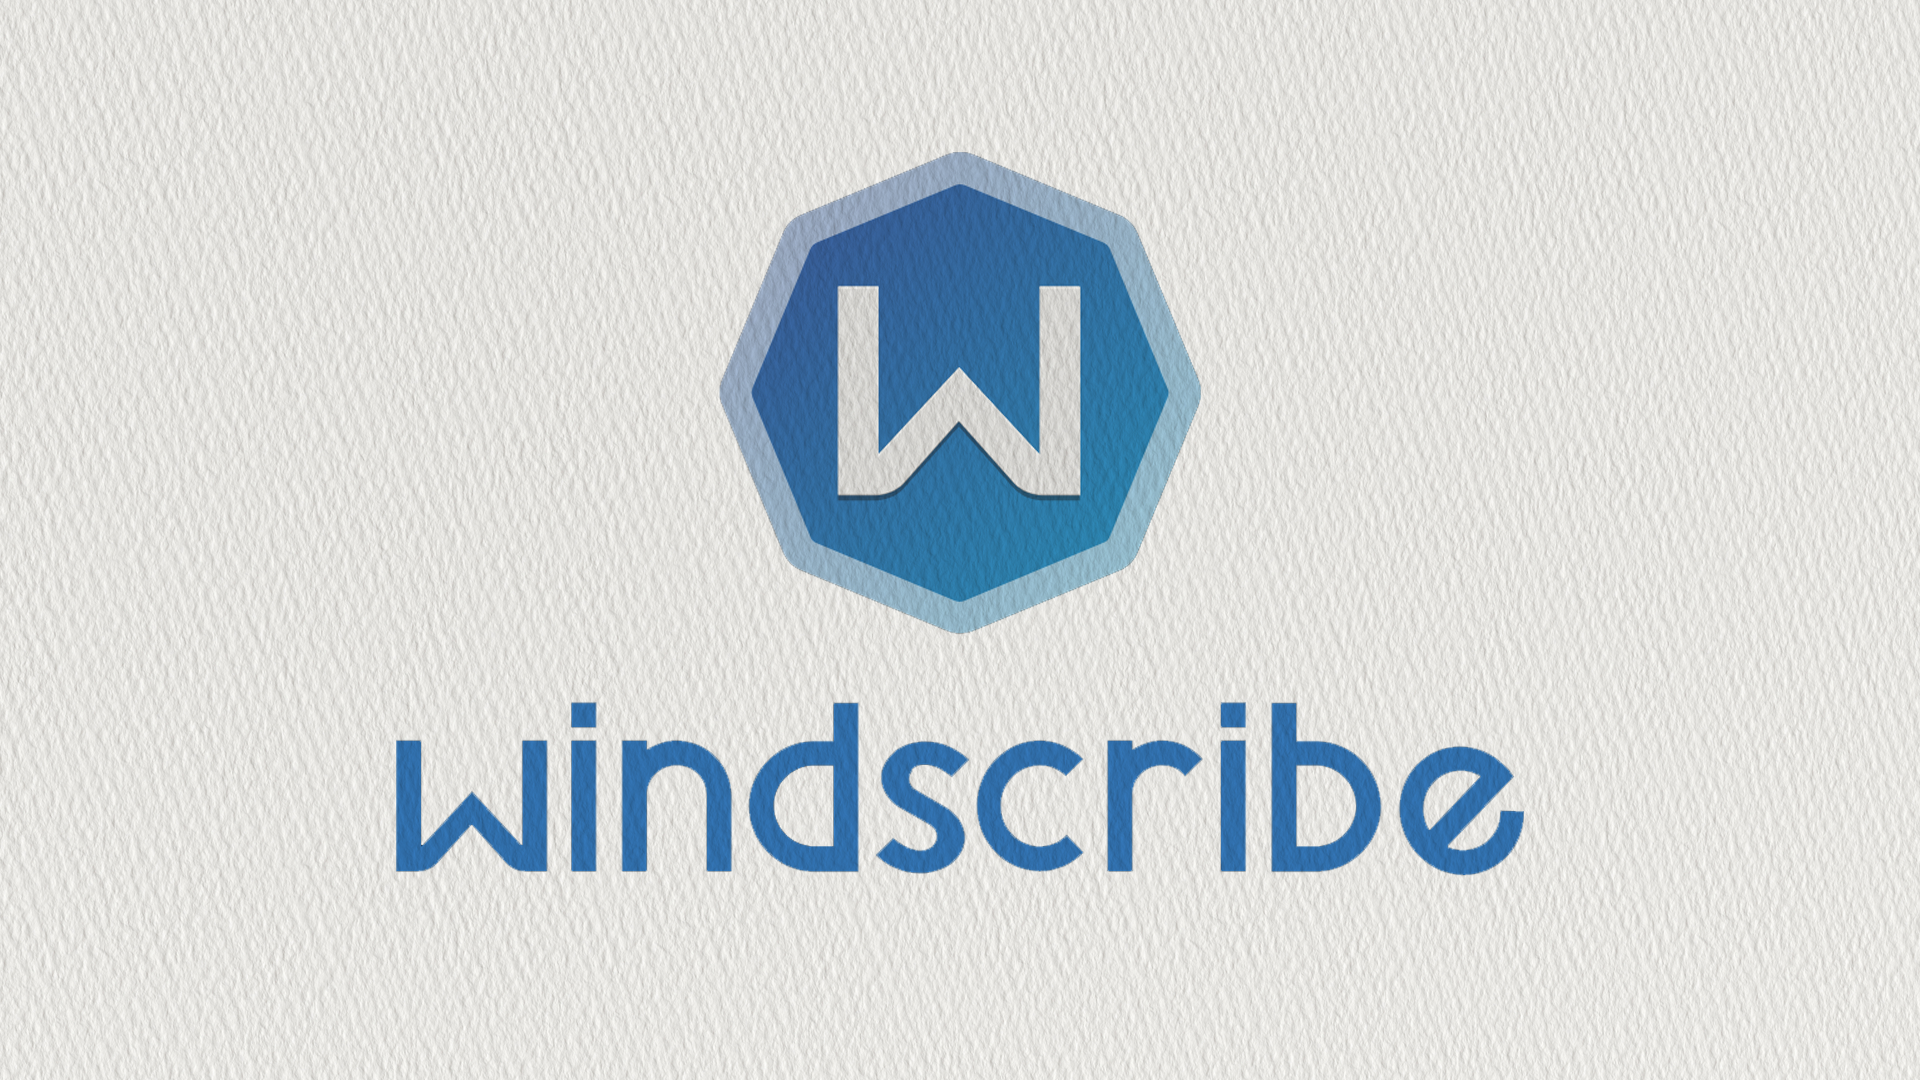  Windscribe: Fortfarande en av de bästa vpn-tjänsterna